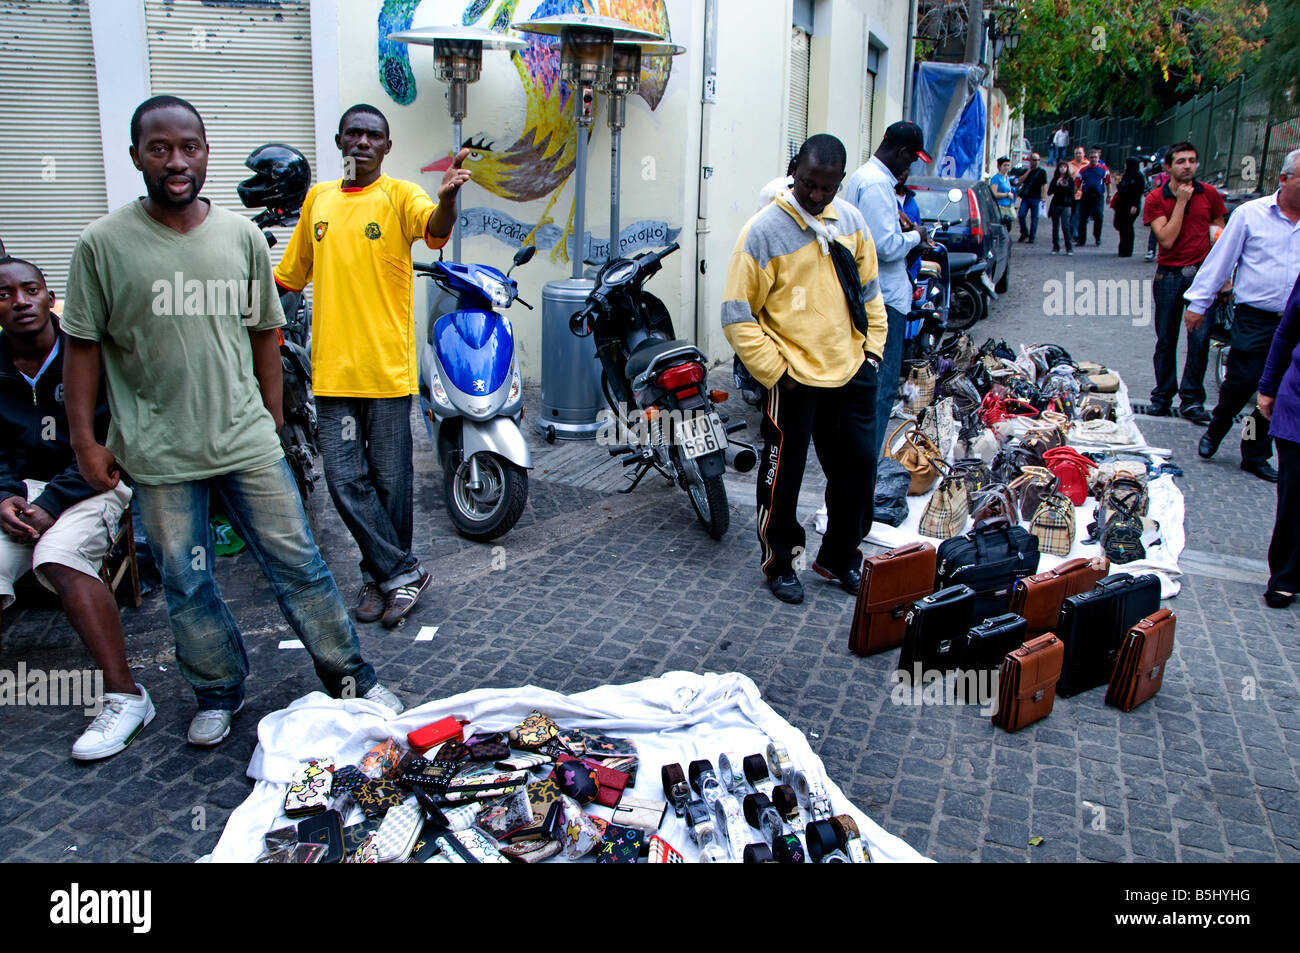 El distrito de compras de Plaka de Atenas inmigrante clandestino subterráneo la inmigración procedente de África, vendiendo bolsas de moda Grecia griego Foto de stock